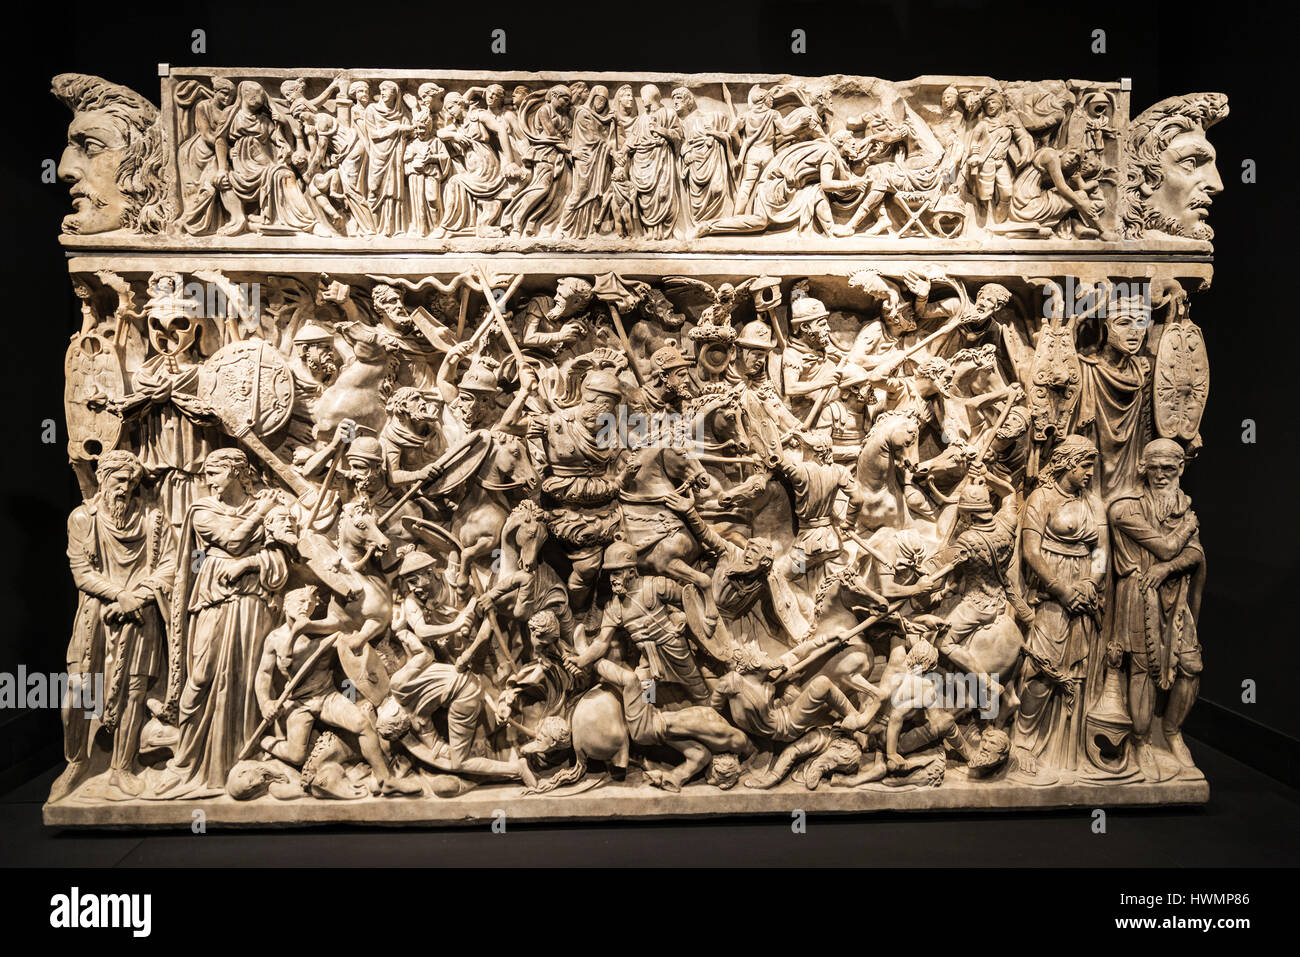 Rome, Italie - 3 janvier 2017 : le sarcophage de Portonaccio est un sarcophage romain antique de Rome, Italie Banque D'Images